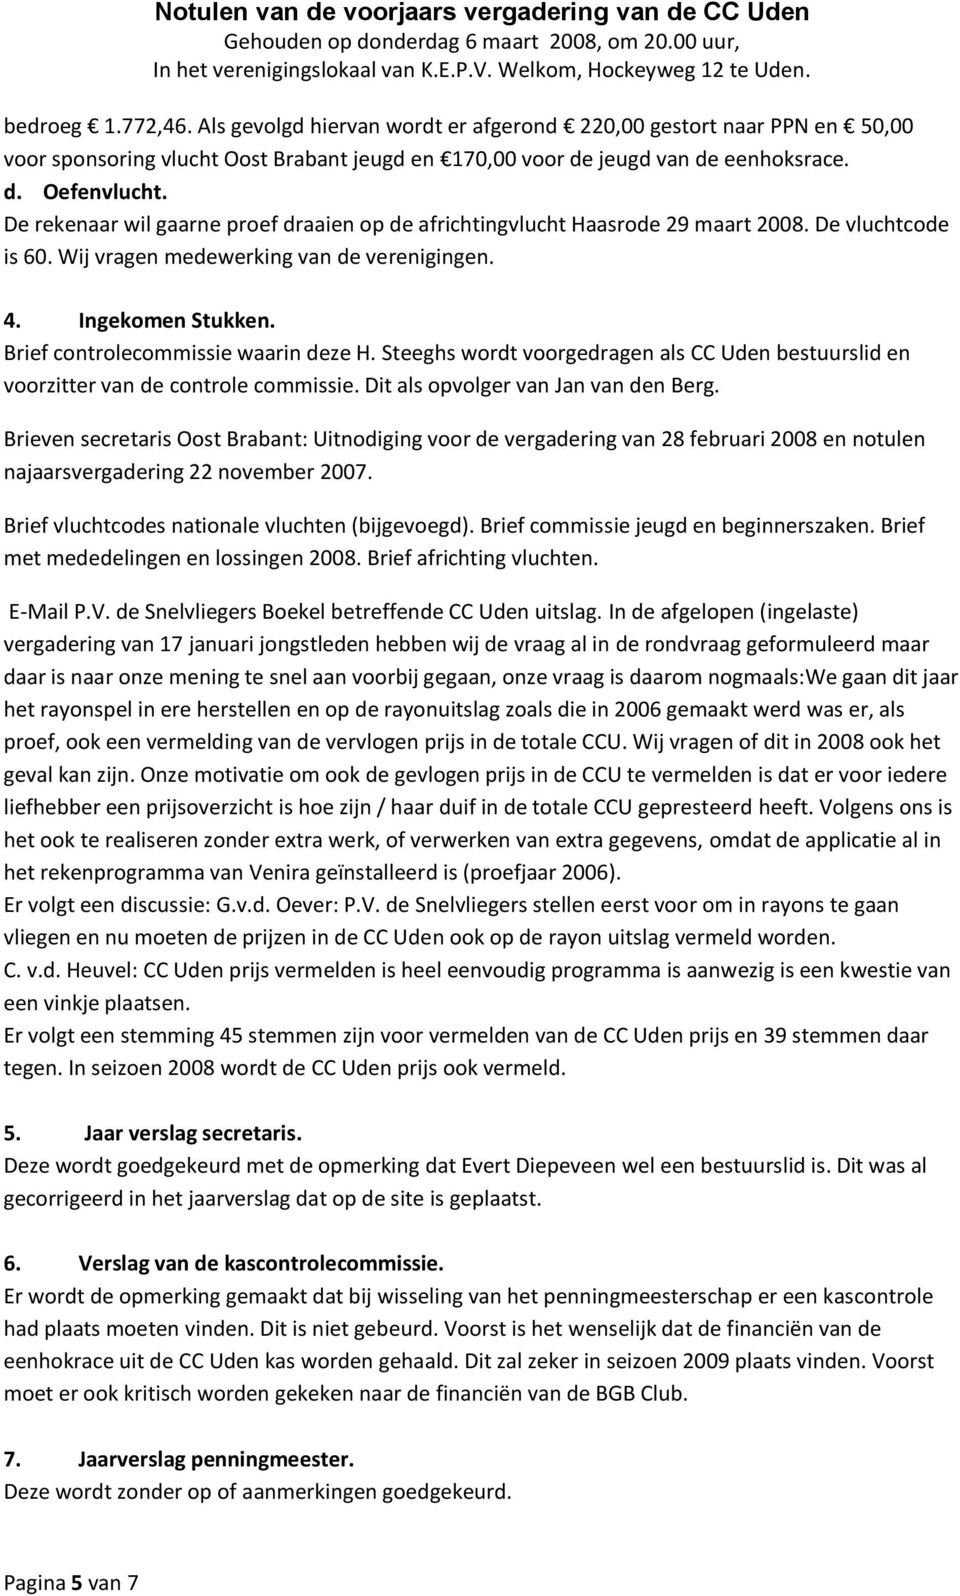 Brief controlecommissie waarin deze H. Steeghs wordt voorgedragen als CC Uden bestuurslid en voorzitter van de controle commissie. Dit als opvolger van Jan van den Berg.